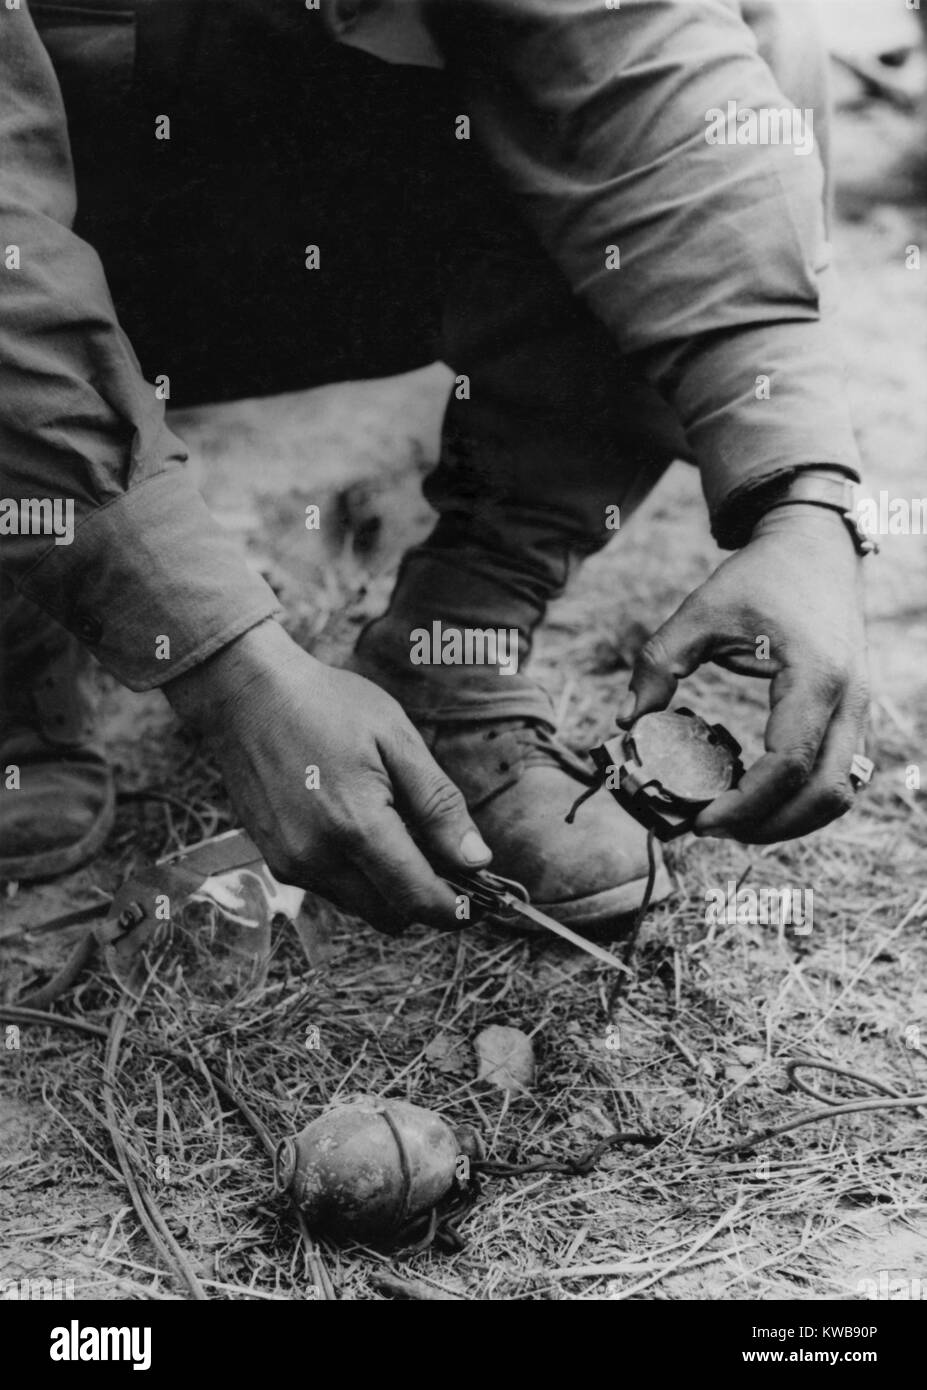 Us-Soldat zerlegt eine Deutsche booby Trap auf der Straße nach St. Gilles gepflanzt. Das Gerät bestand aus einem verlockenden Kompass auf eine Granate mit einem Shoestring befestigt. Abholung Kompass wäre ein Stift gezogen haben, die Granate. 1944. Weltkrieg 2. (BSLOC 2014 10 159) Stockfoto